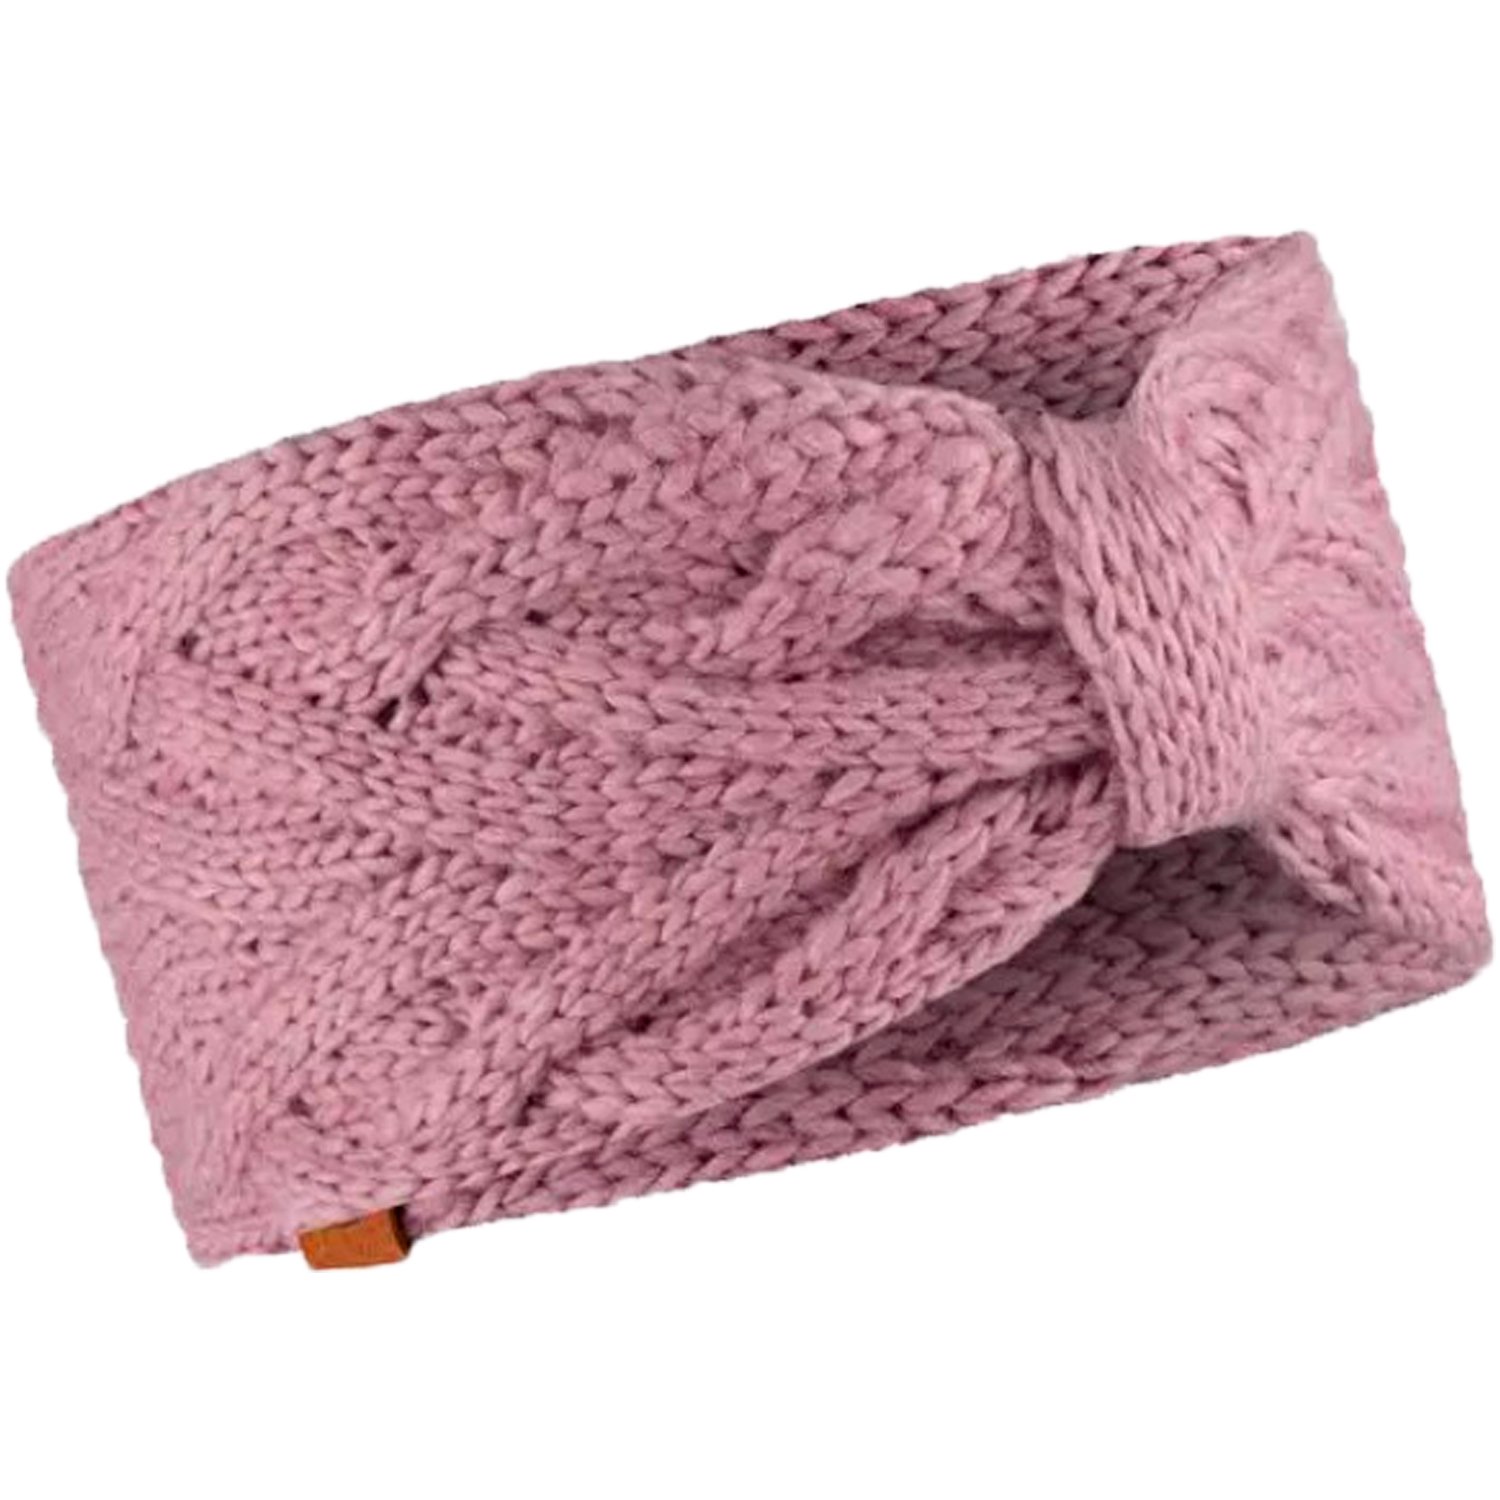 Повязка Buff Knitted Headband Caryn Rosé, женская, 2022-23, розовый, 126465.512.10.00 повязка buff coolnet uv slim headband zat multi женская 131423 555 10 00